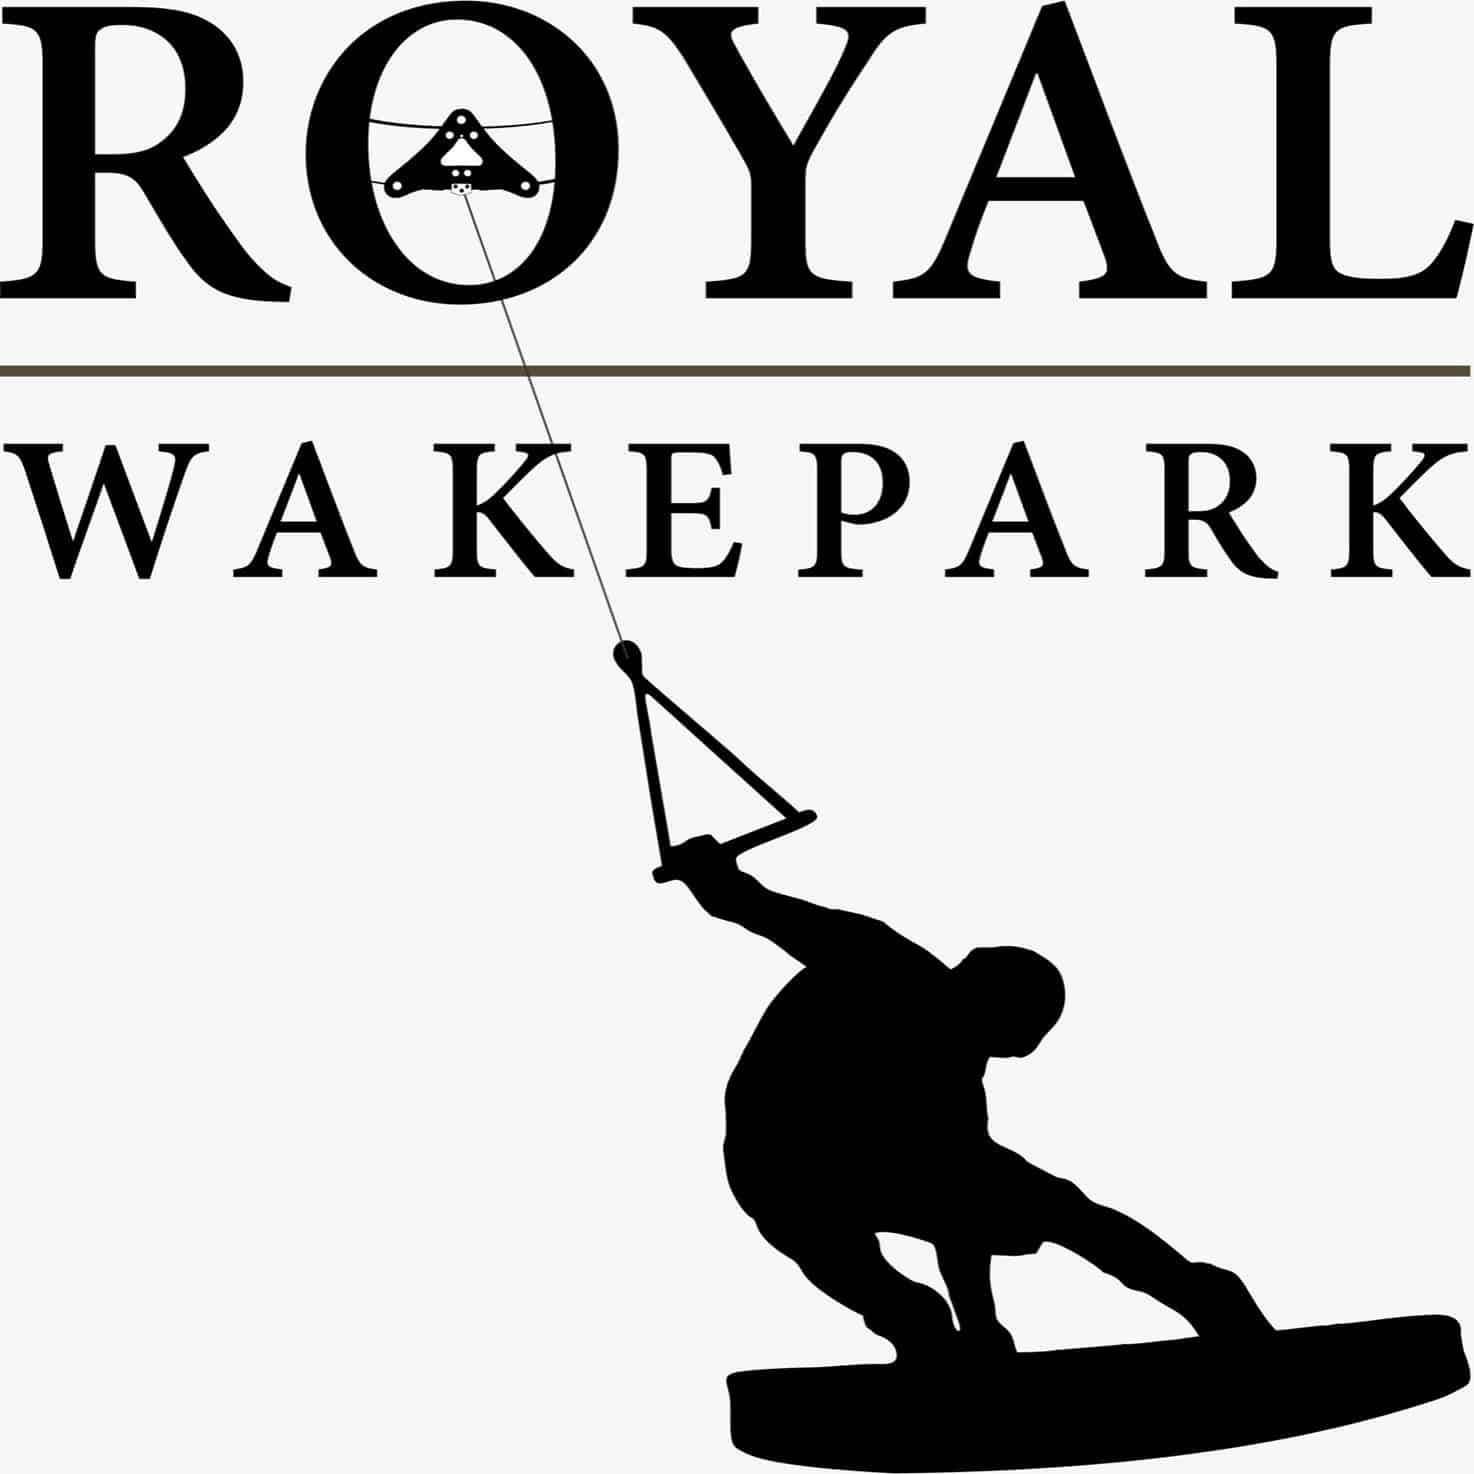 Royal Wake Park